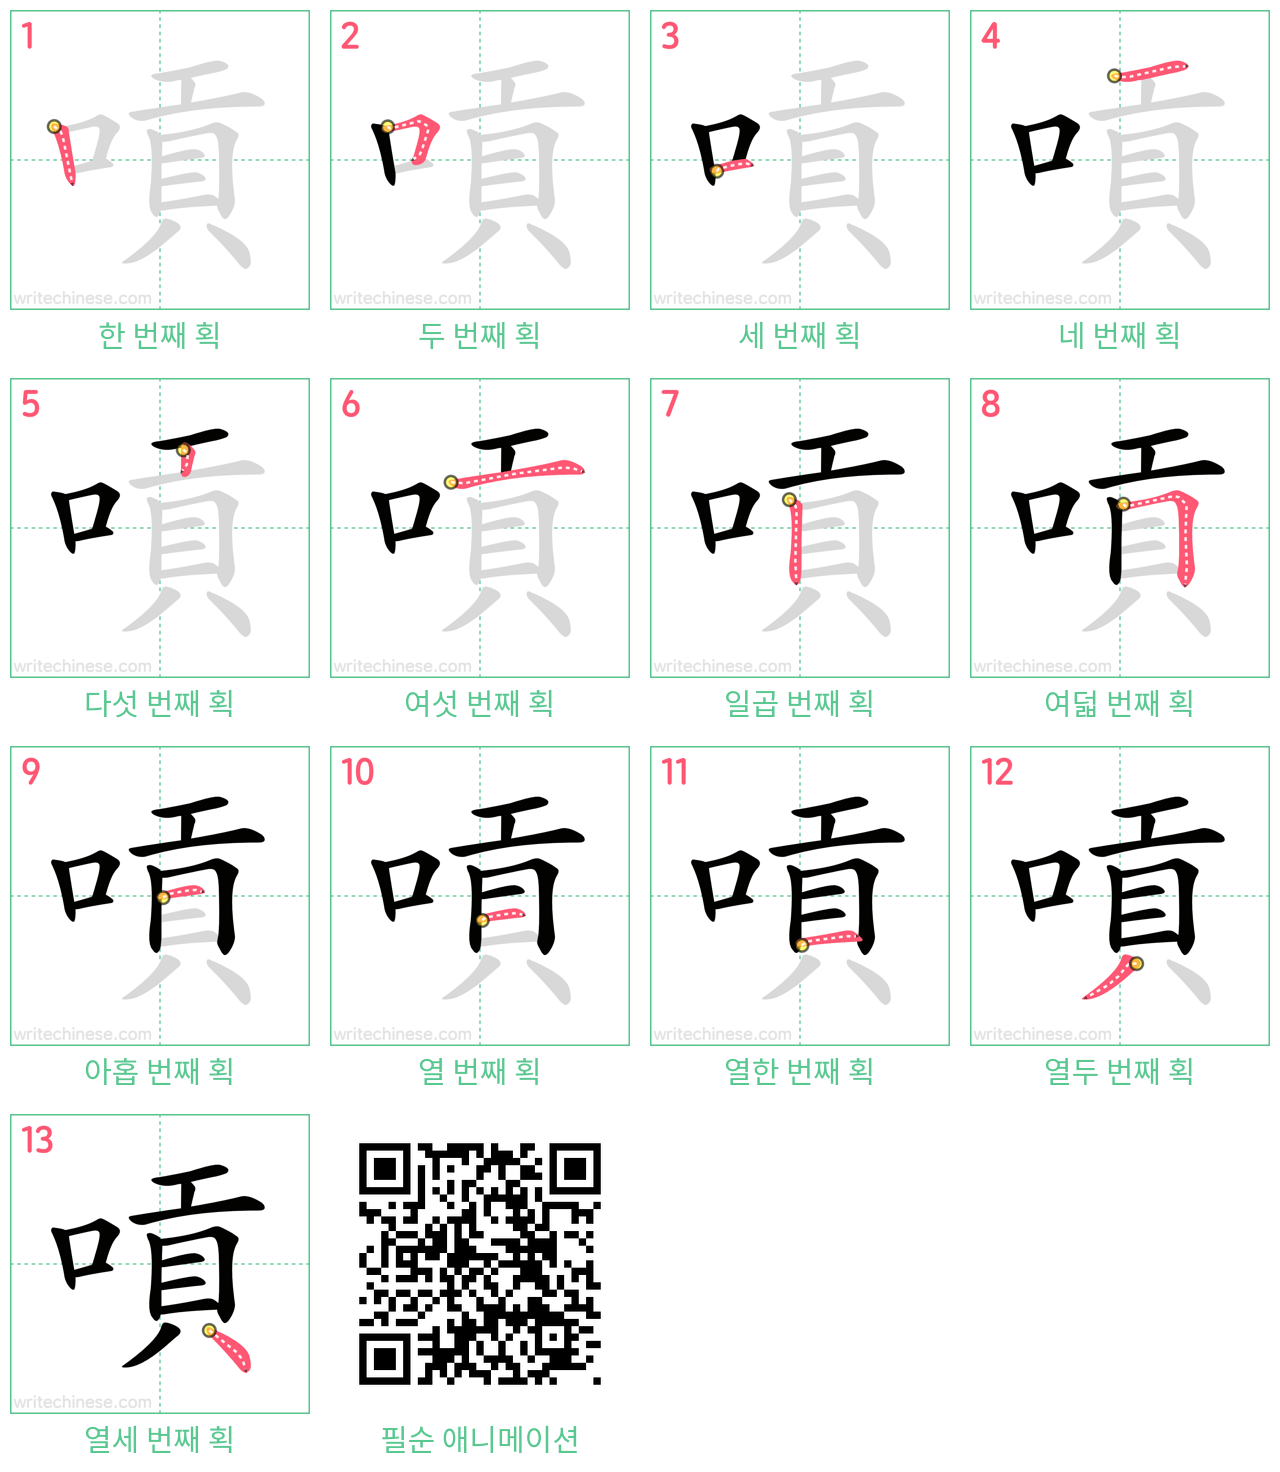 嗊 step-by-step stroke order diagrams